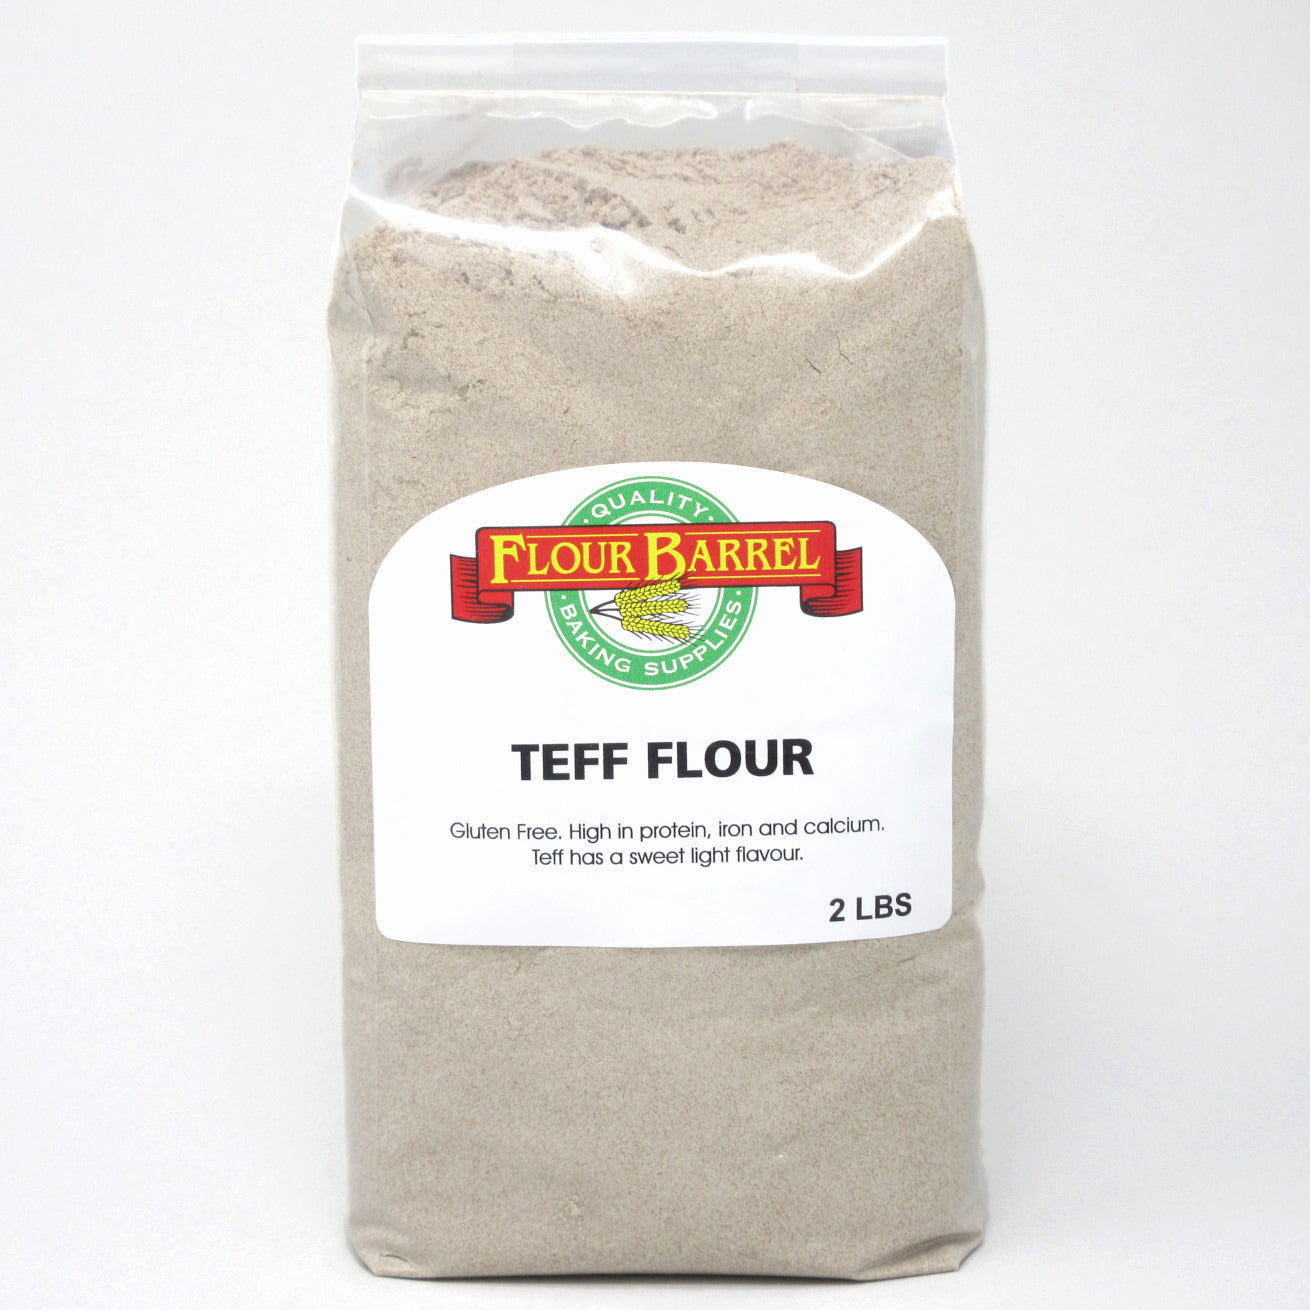 Flour Barrel product image - Teff Flour